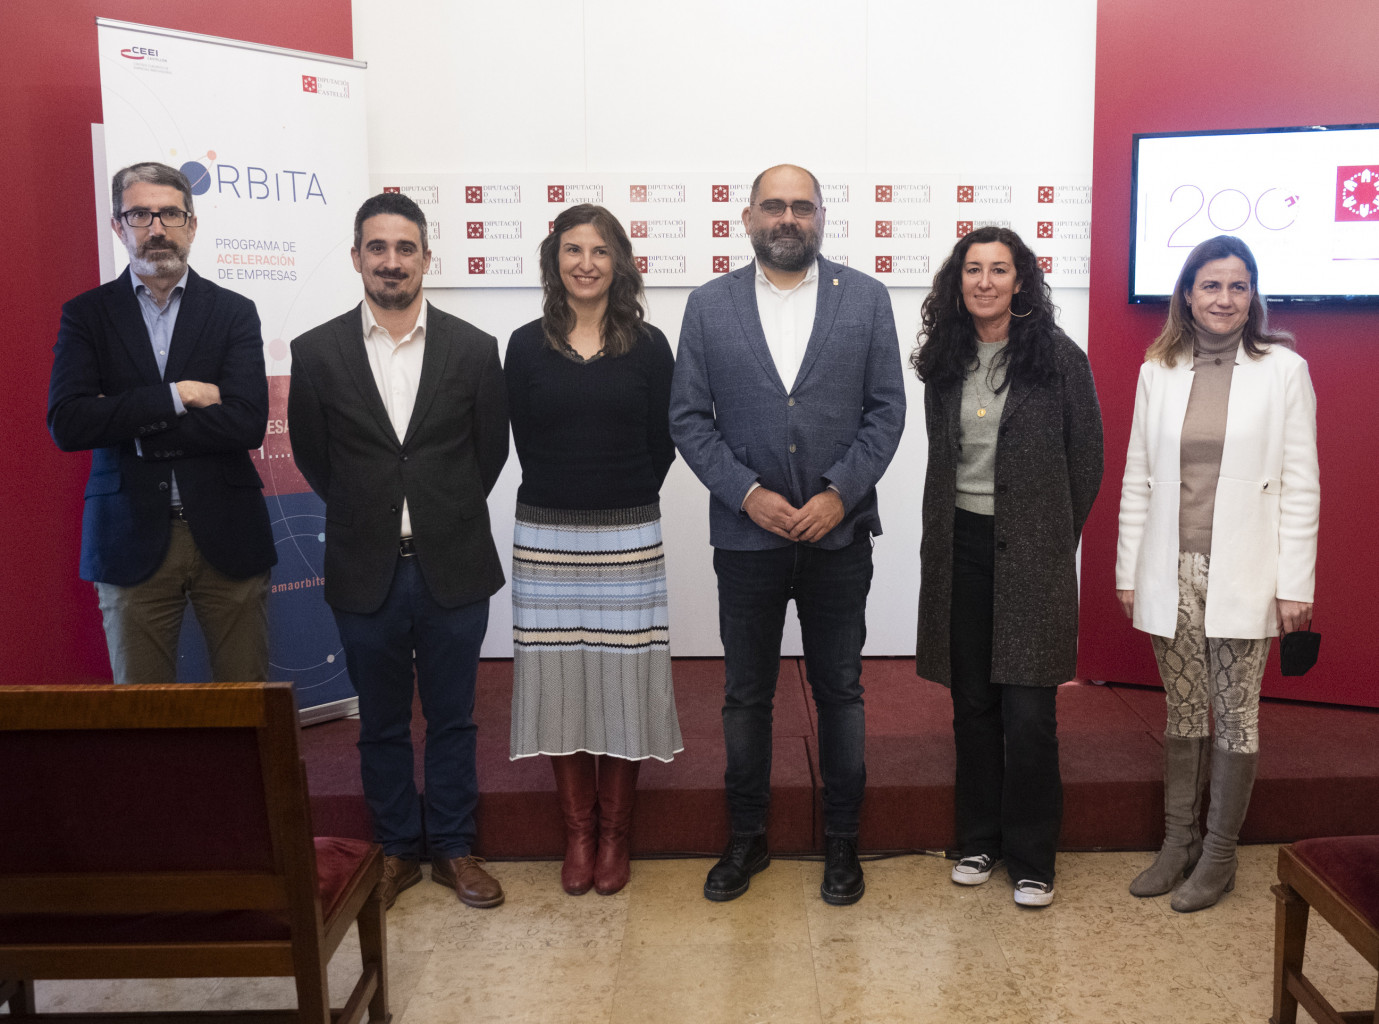 La Diputación de Castellón presenta la quinta edición del Programa Órbita